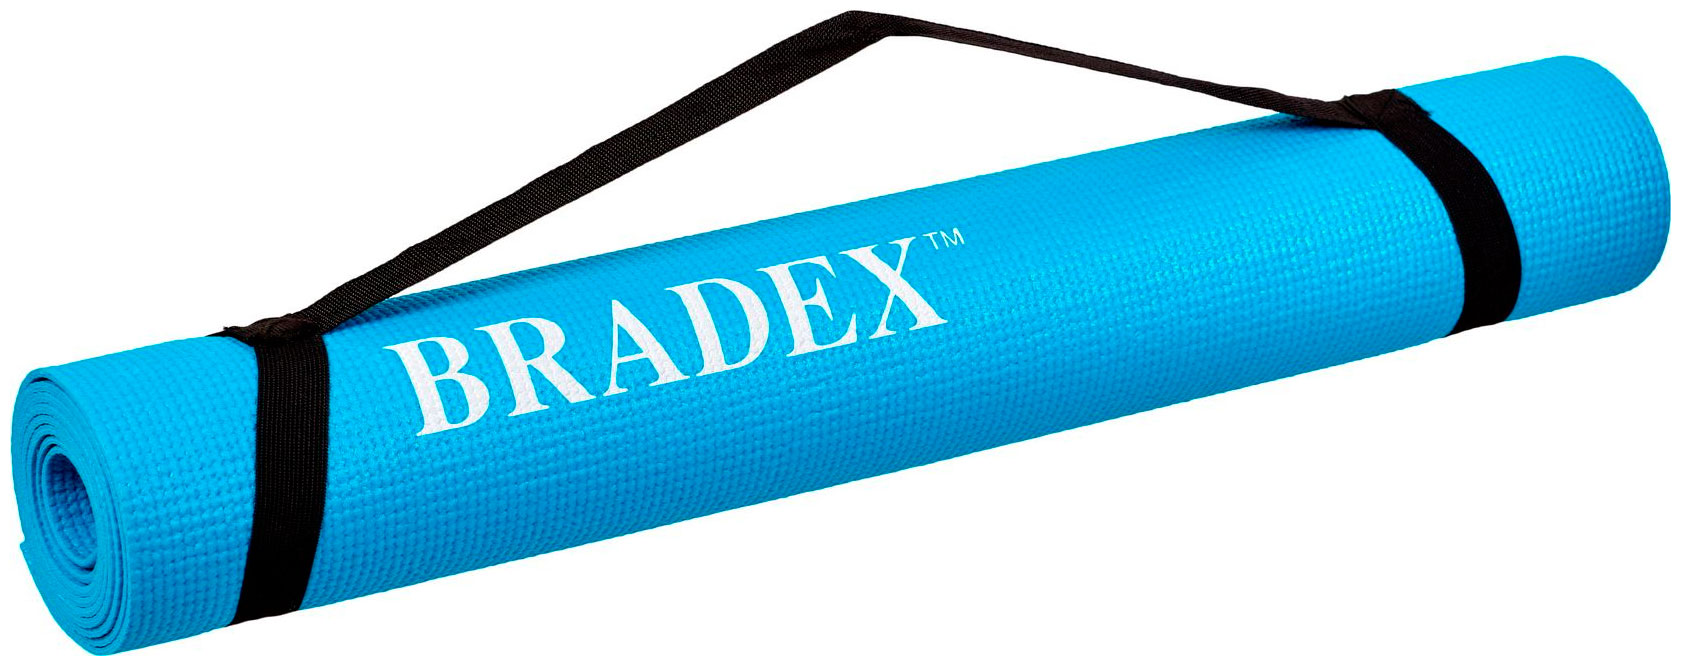 Коврик для йоги и фитнеса Bradex SF 0693 173*61*03 см бирюзовый с переноской bradex коврик для йоги и фитнеса bradex sf 0687 173 61 0 6 см двухслойный фиолетовый серый bradex